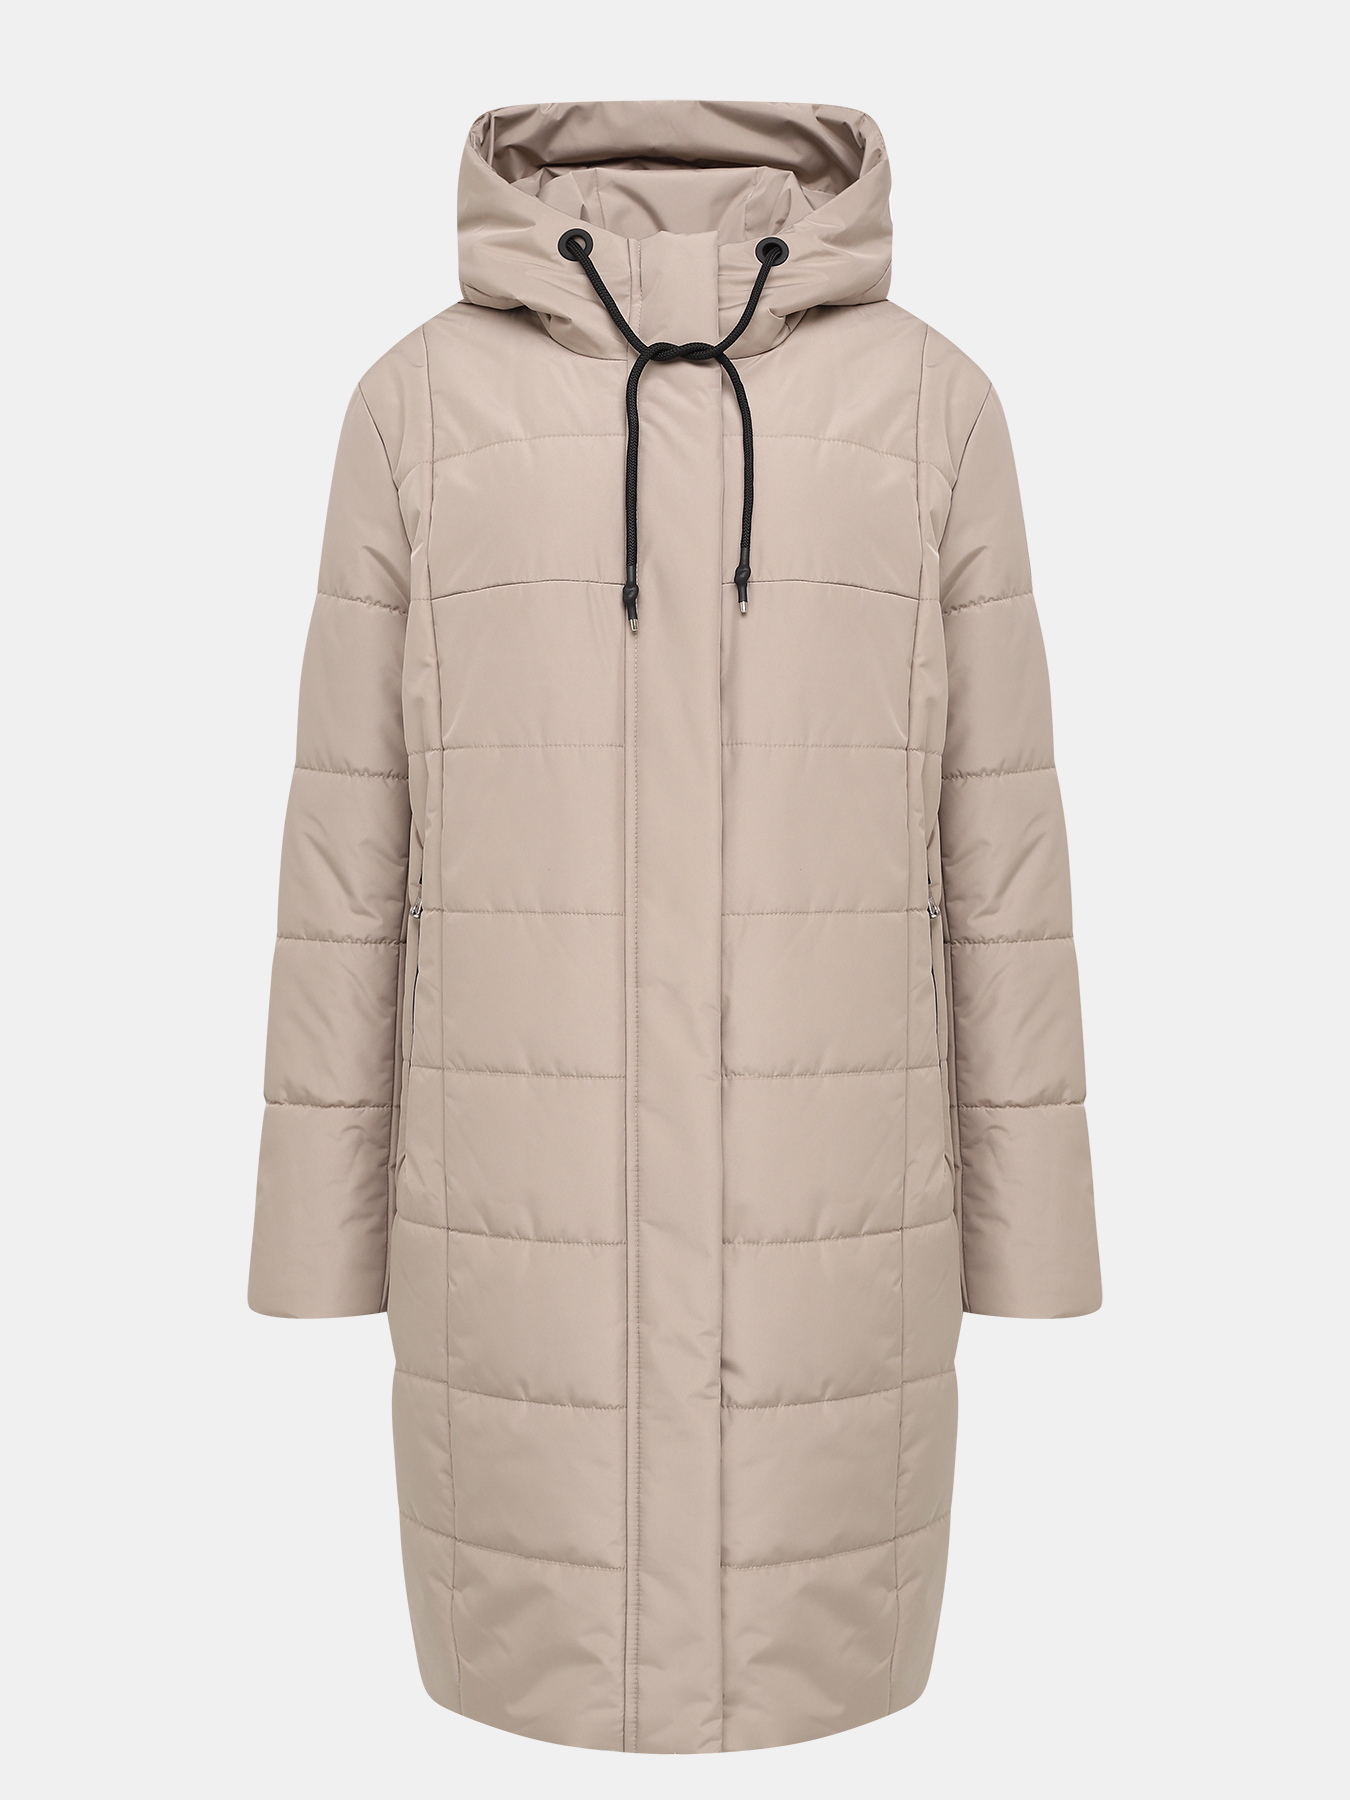 Пальто зимнее Maritta 433536-024, цвет бежевый, размер 52